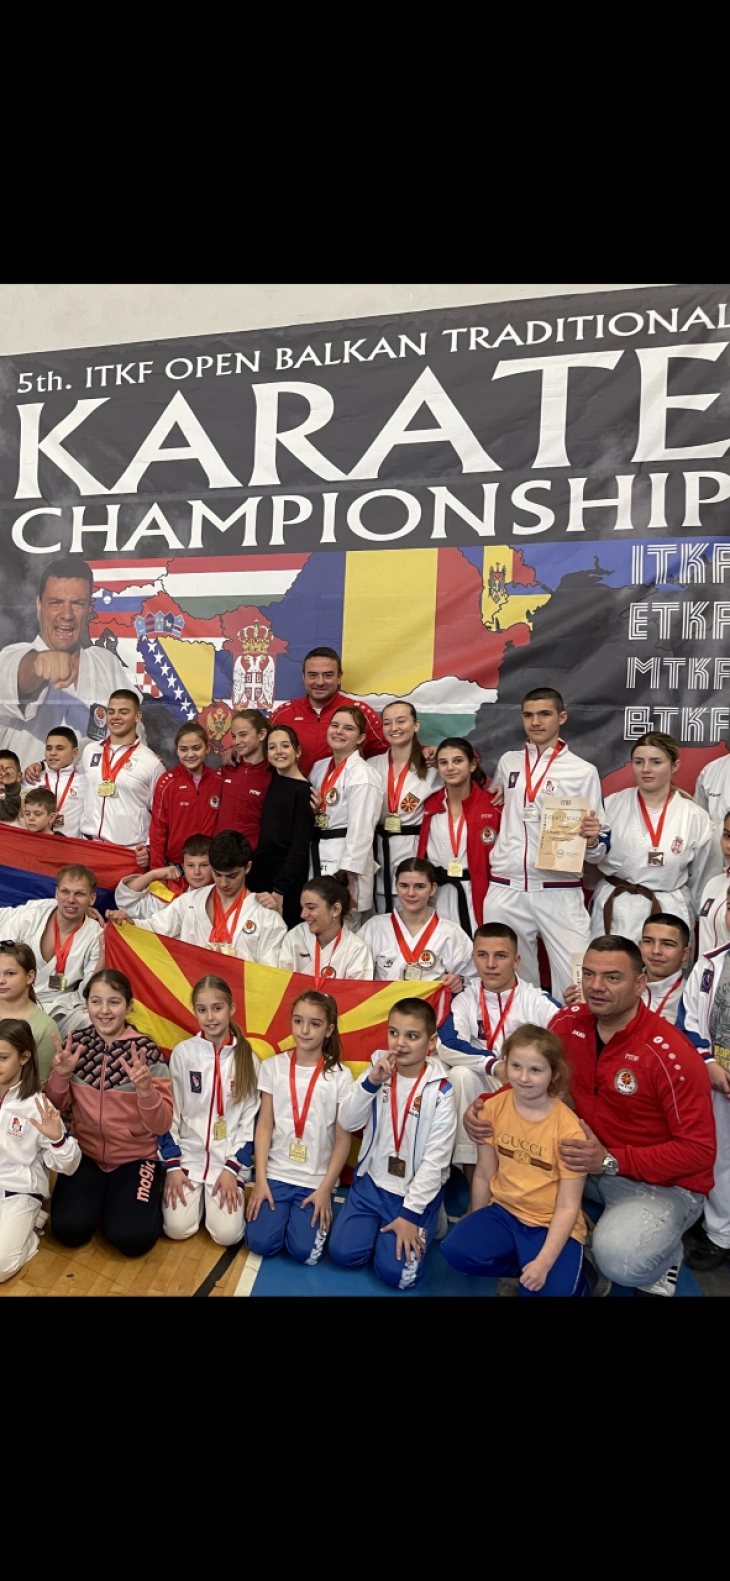 Македонската репрезентација во традиционално карате најуспешна на ИТКФ балканскиот шампионат